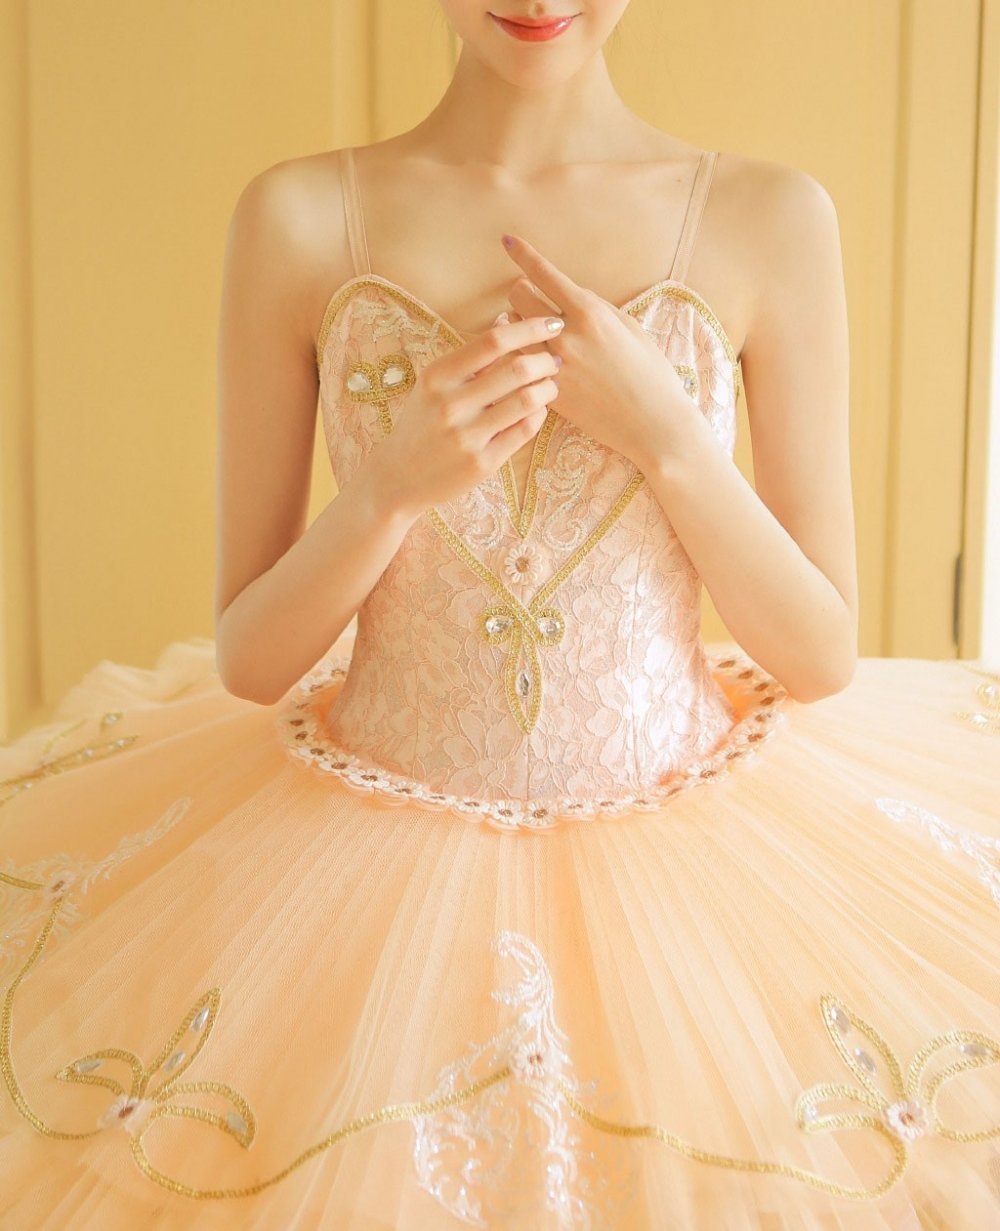 芭蕾舞美女翩翩舞裙迷人玉颈写真